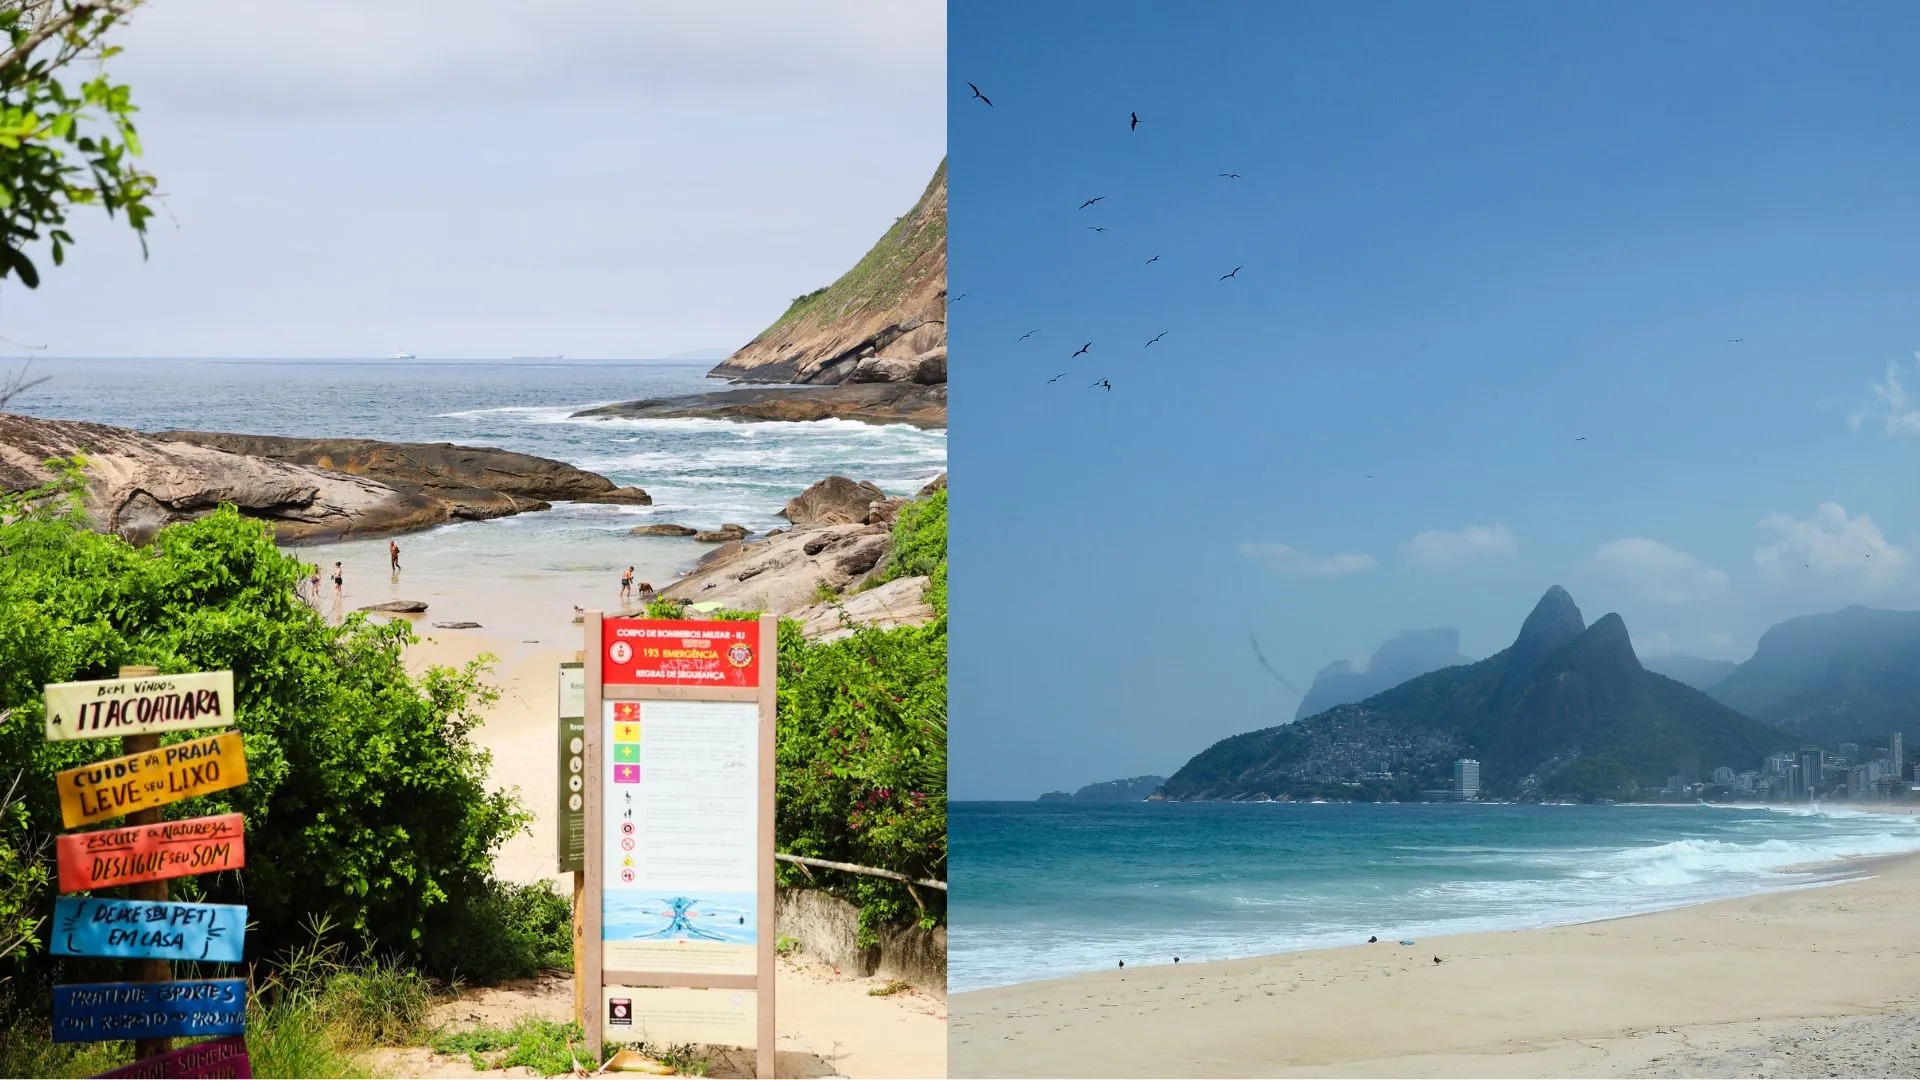 Praia de Itacoatiara (à esquerda) e Praia de Ipanema (à direita)